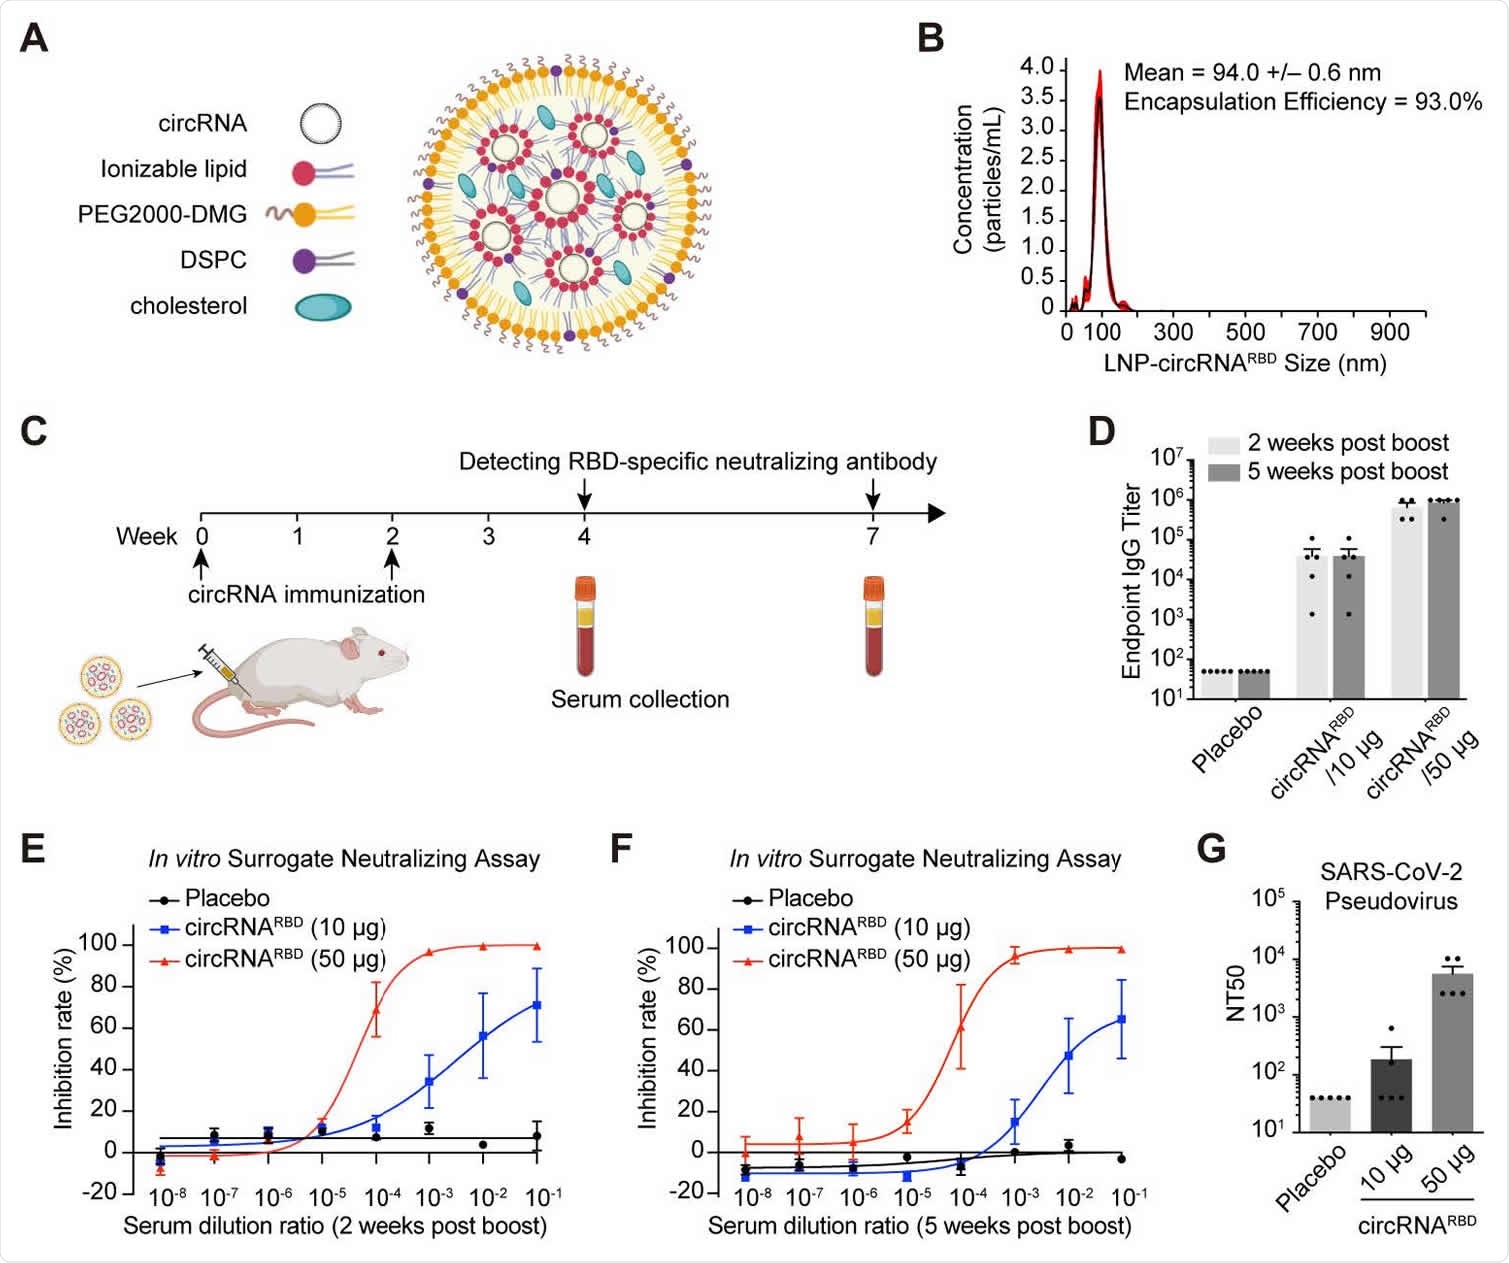 Respuestas inmunes humorales en ratones inmunizados con vacunas circulares de SARS-CoV-2.  (A) Representación esquemática del complejo LNP-CircRNA.  (B) Gráfico de tamaño de enfoque representativo de LNP-circRNARBD medido por el método de dispersión de luz dinámica.  (C) Diagrama esquemático del proceso de injerto de LNP-circRNARB en ratones BALB / cy la tabla de recolección de suero para el análisis de anticuerpos específicos.  (D) Medición del título de anticuerpos IgG específicos de SARS-CoV-2 mediante ELISA.  Los datos se presentaron como media ± SEM (n = 4 o 5).  (E) Gráfico de la curva sigmoidea de la tasa de inhibición por suero de ratones inmunizados con el ensayo de neutralización del virus variante.  Se recogieron sueros de circRNARBD (10 µg) y 260 (50 µg) de ratones inmunizados de CircRNARBD 2 semanas después de la segunda dosis.  Los datos se presentaron como media ± SEM (n = 4).  (F) Gráfico de curva sigmoldal de la tasa de inhibición por suero de ratones inmunizados con el ensayo de neutralización de virus variante.  Se recogieron sueros de ratones inmunizados con circRNARBD (10 µg) y circRNARBD (50 µg) 5 semanas después del refuerzo.  Los datos se presentaron como media ± SEM (n = 5).  (G) NT50 se calculó usando el pseudovirus SARS-CoV-2 basado en virus lento.  Los datos se presentaron como media ± SEM (n = 5).